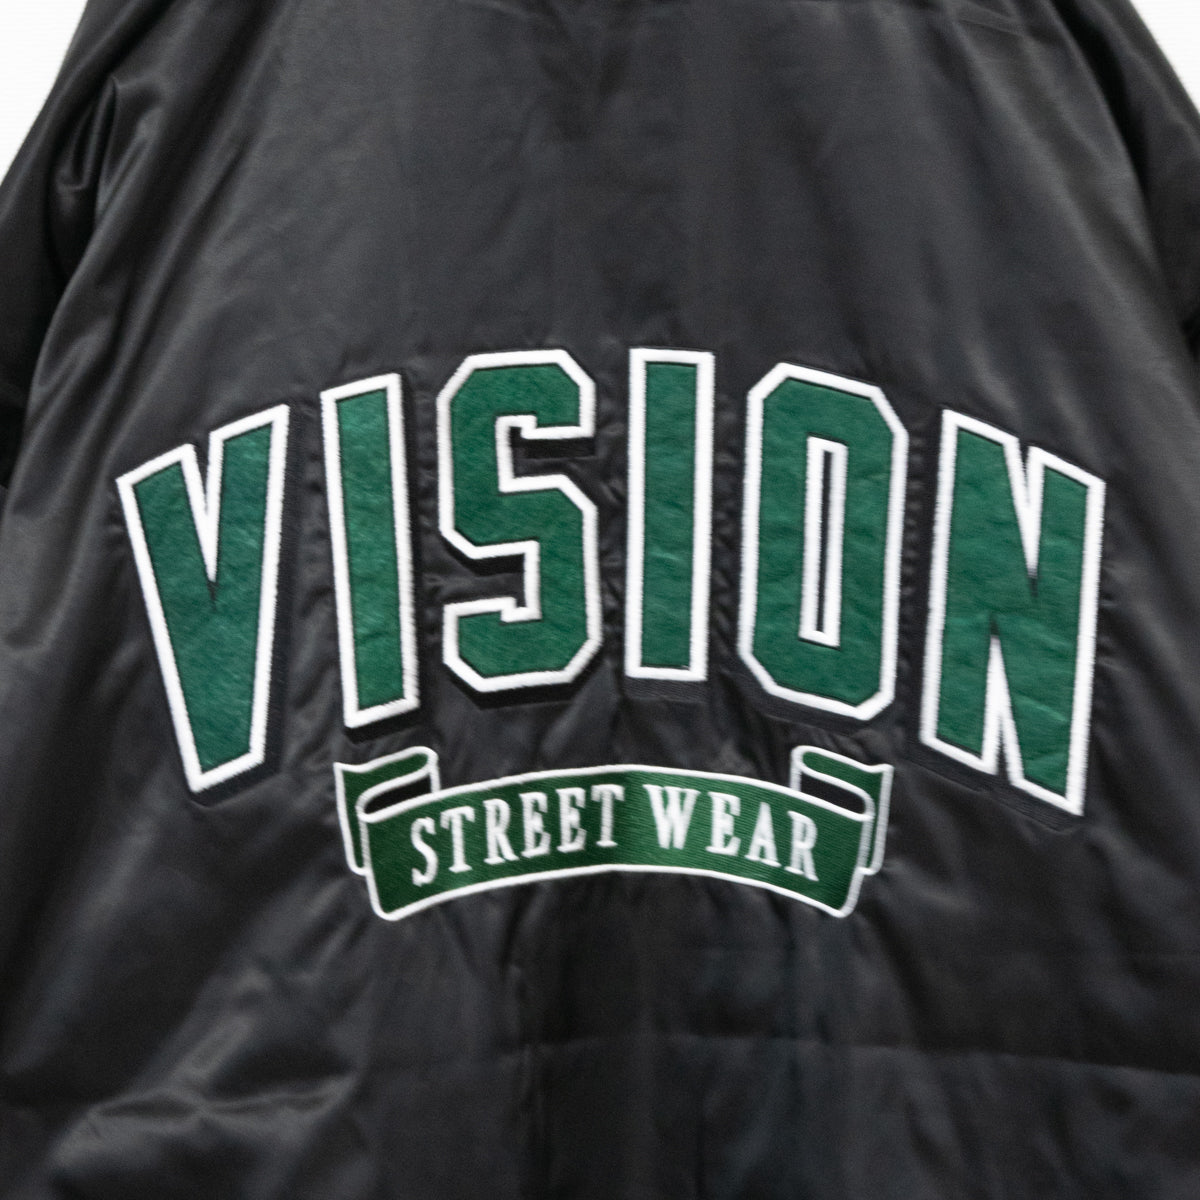 VISION STREET WEAR リバーシブル中綿サテンブルゾン BLACK